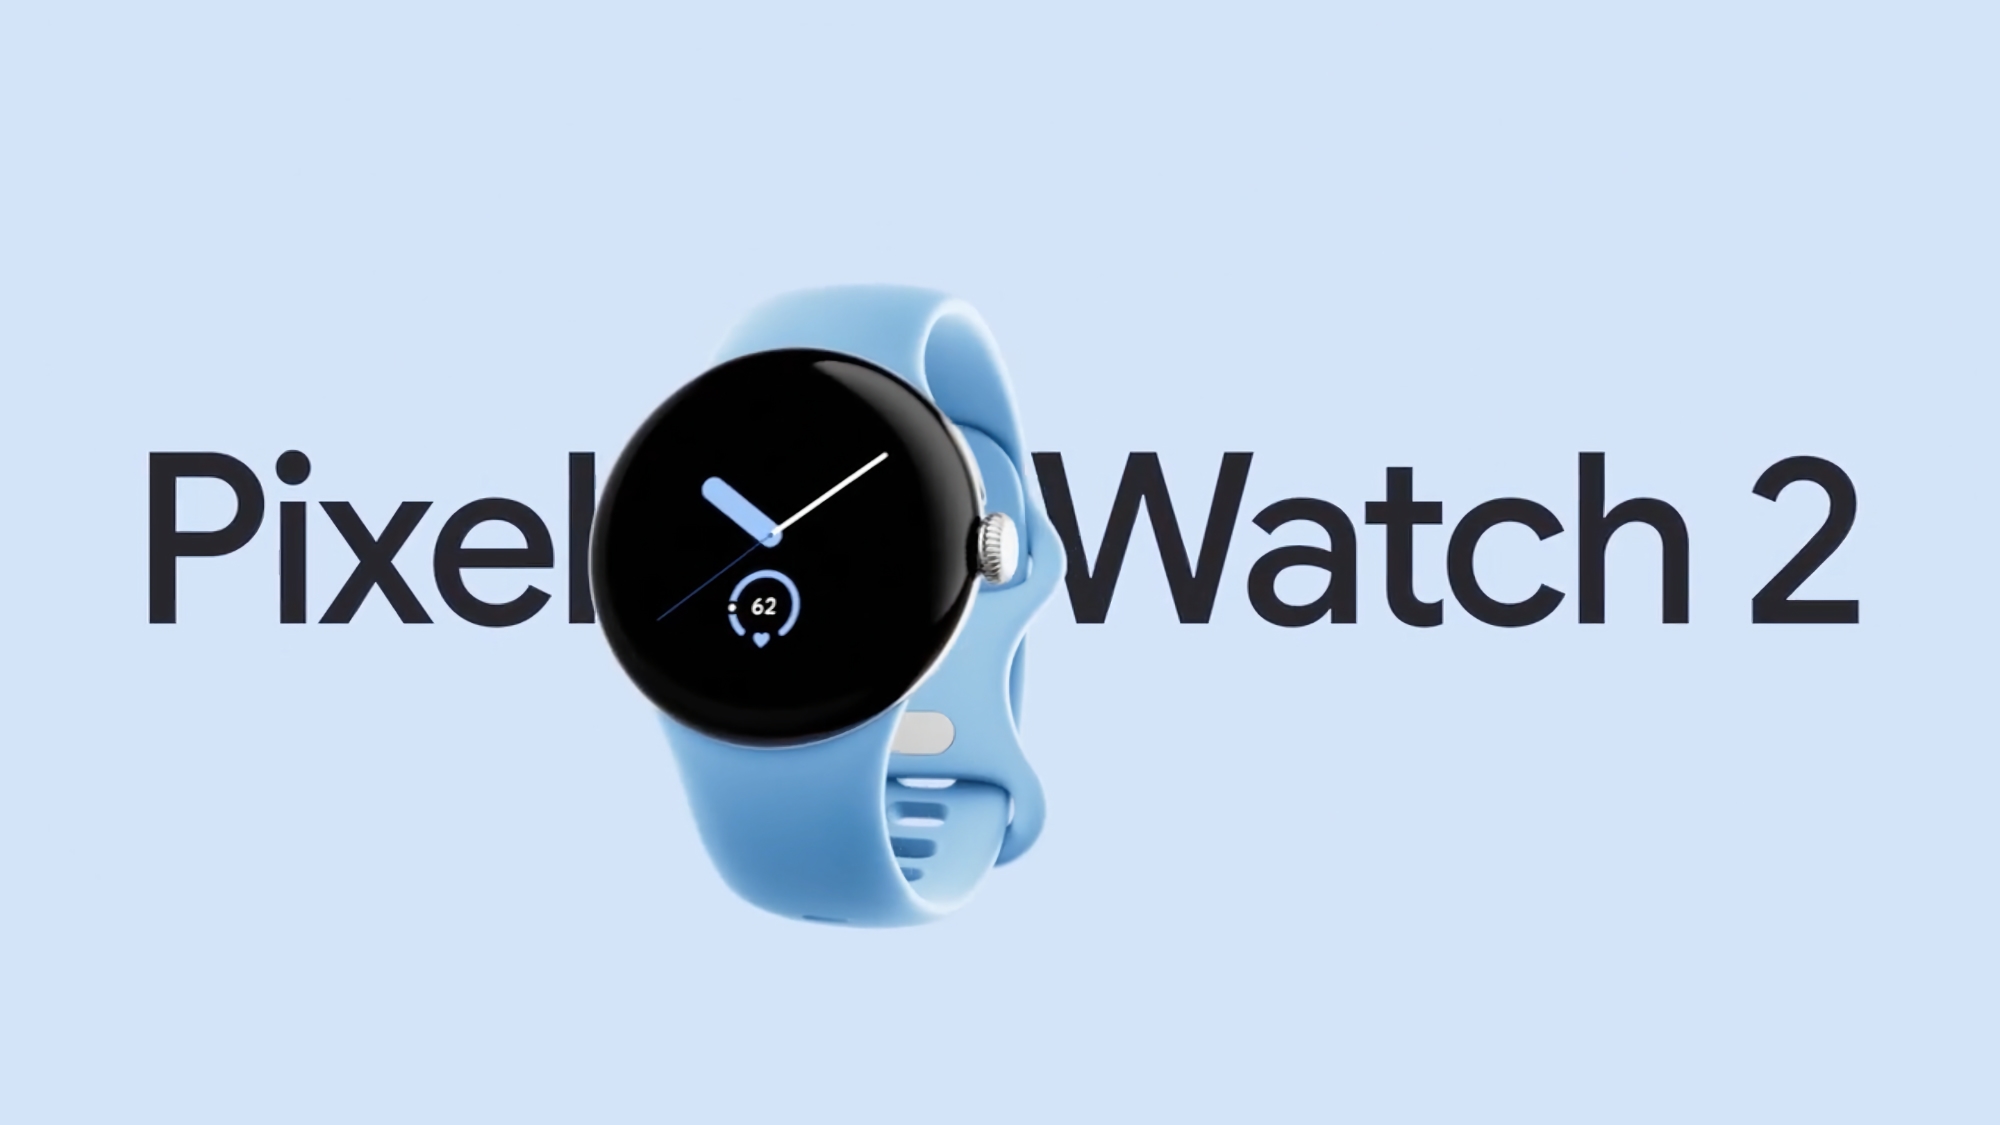 Sensor voor lichaamstemperatuur, bijgewerkte hartslagmeter en nieuwe bandjes: Google Pixel Watch 2 advertentie is online verschenen